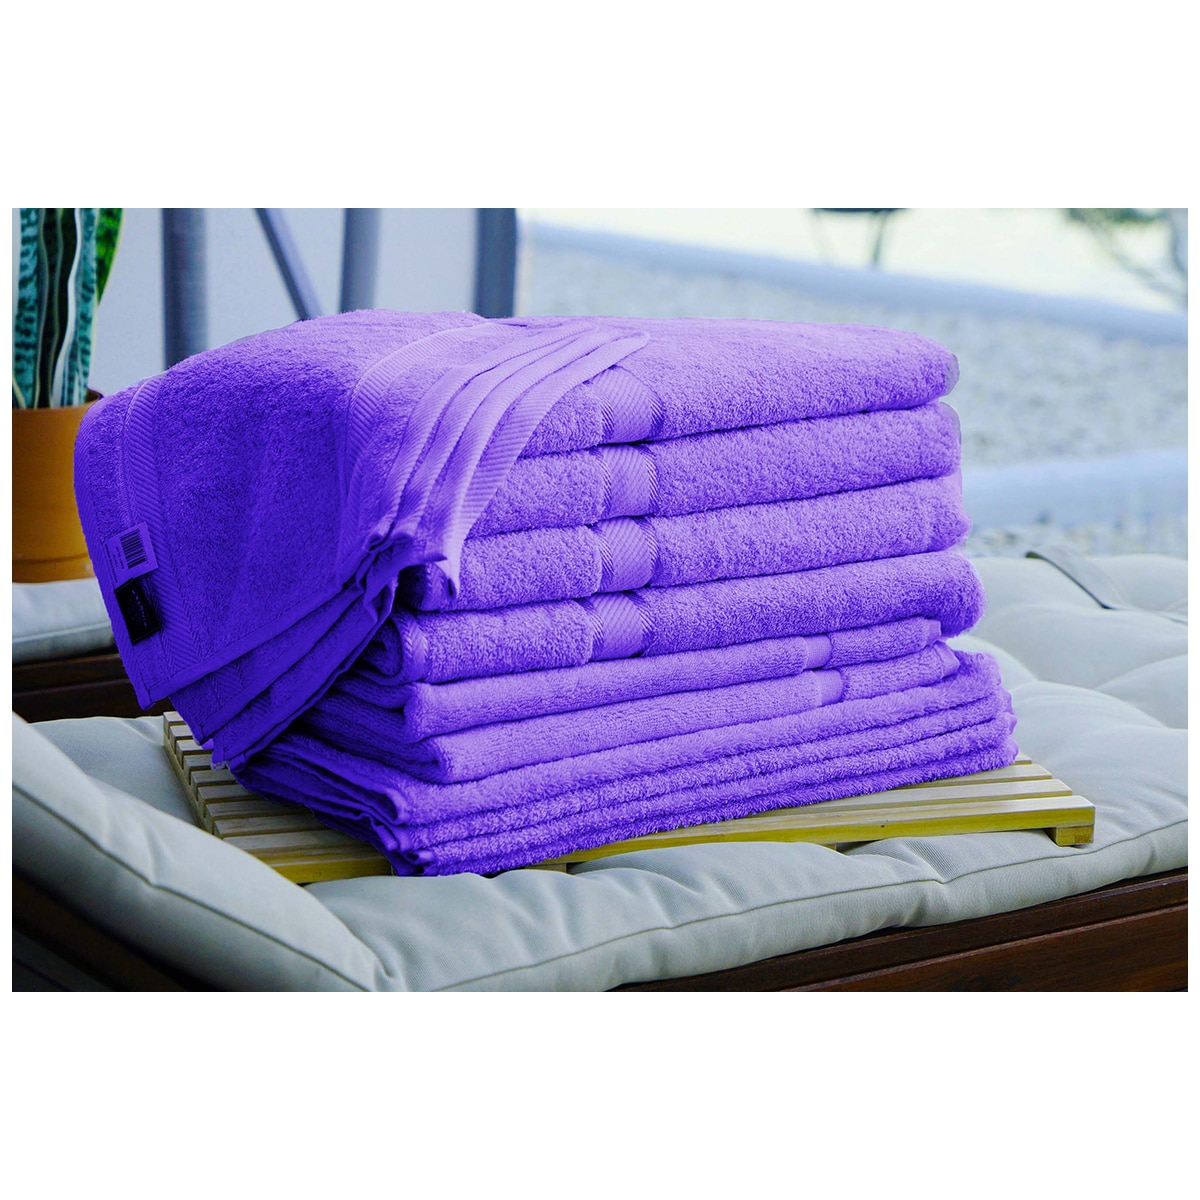 Kingtex Plain dyed 100% Combed Cotton towel range 550gsm Bath Sheet set 14 piece - Purple